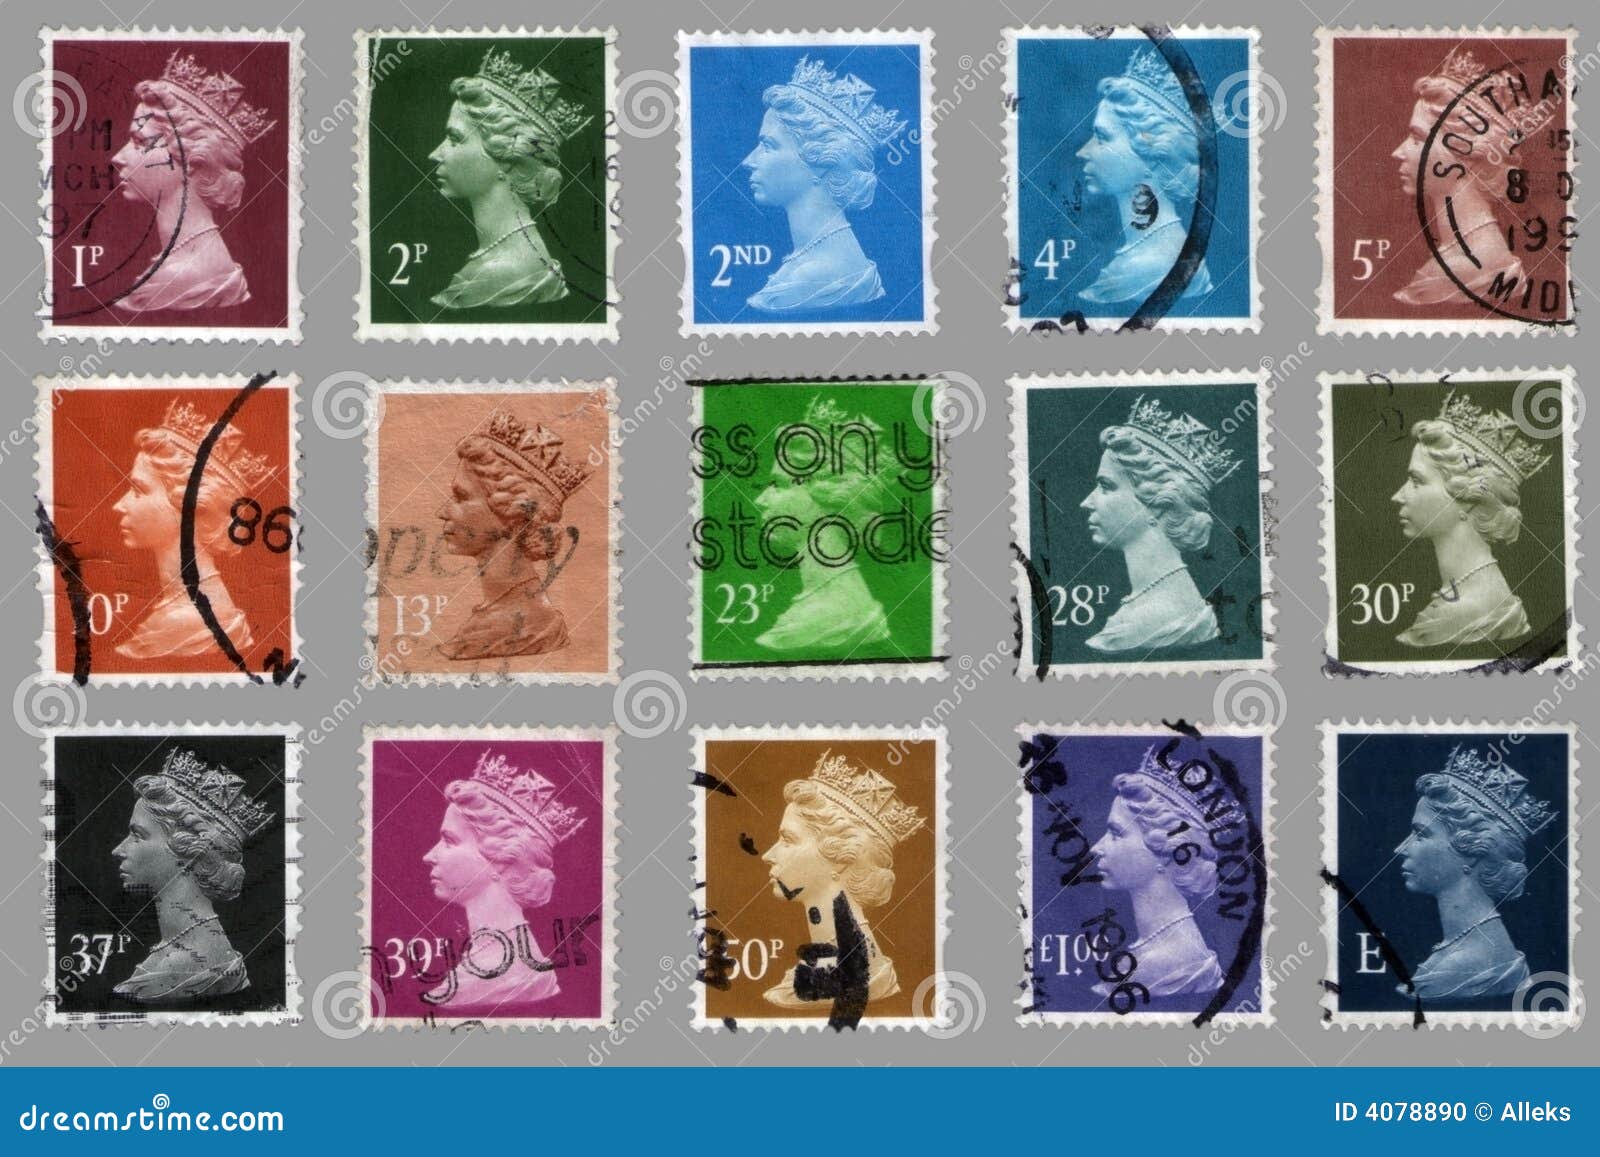 Britische Briefmarken Redaktionelles Bild Bild Von Briefmarken